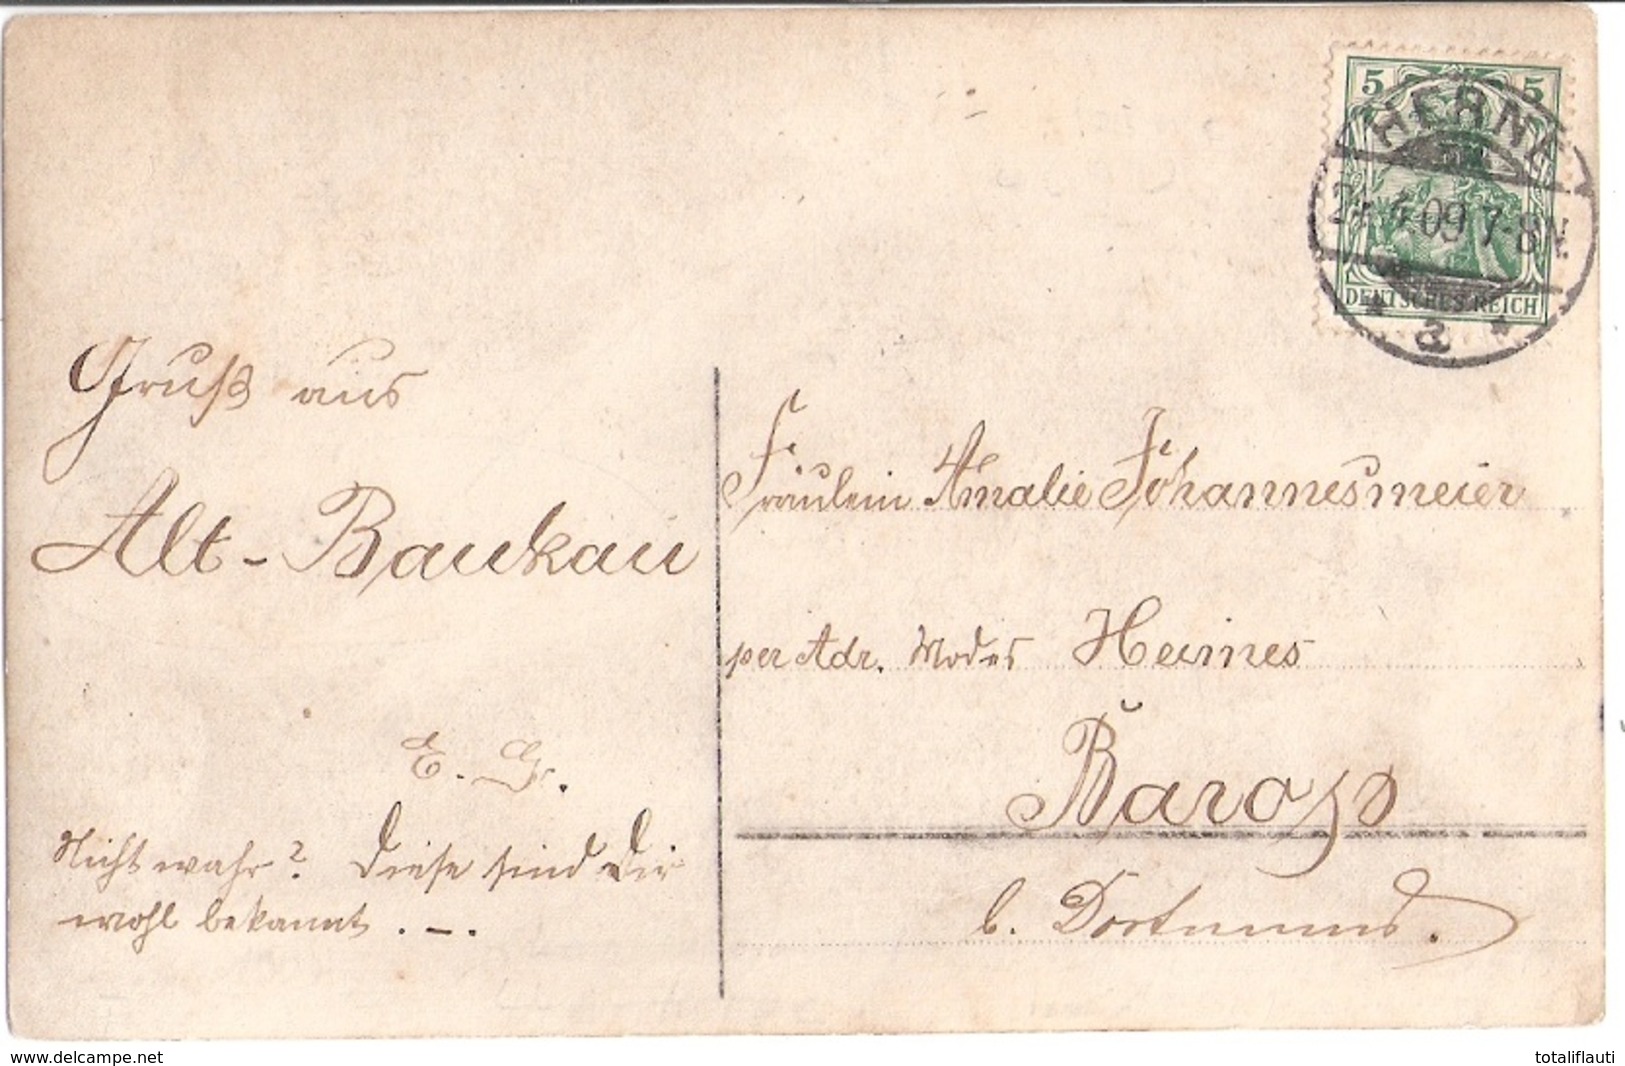 HERNE Alt Baukau Colonialwaren Johannesmeier Emailschilder Original Private Fotokarte 24.4.1909 Gelaufen - Herne